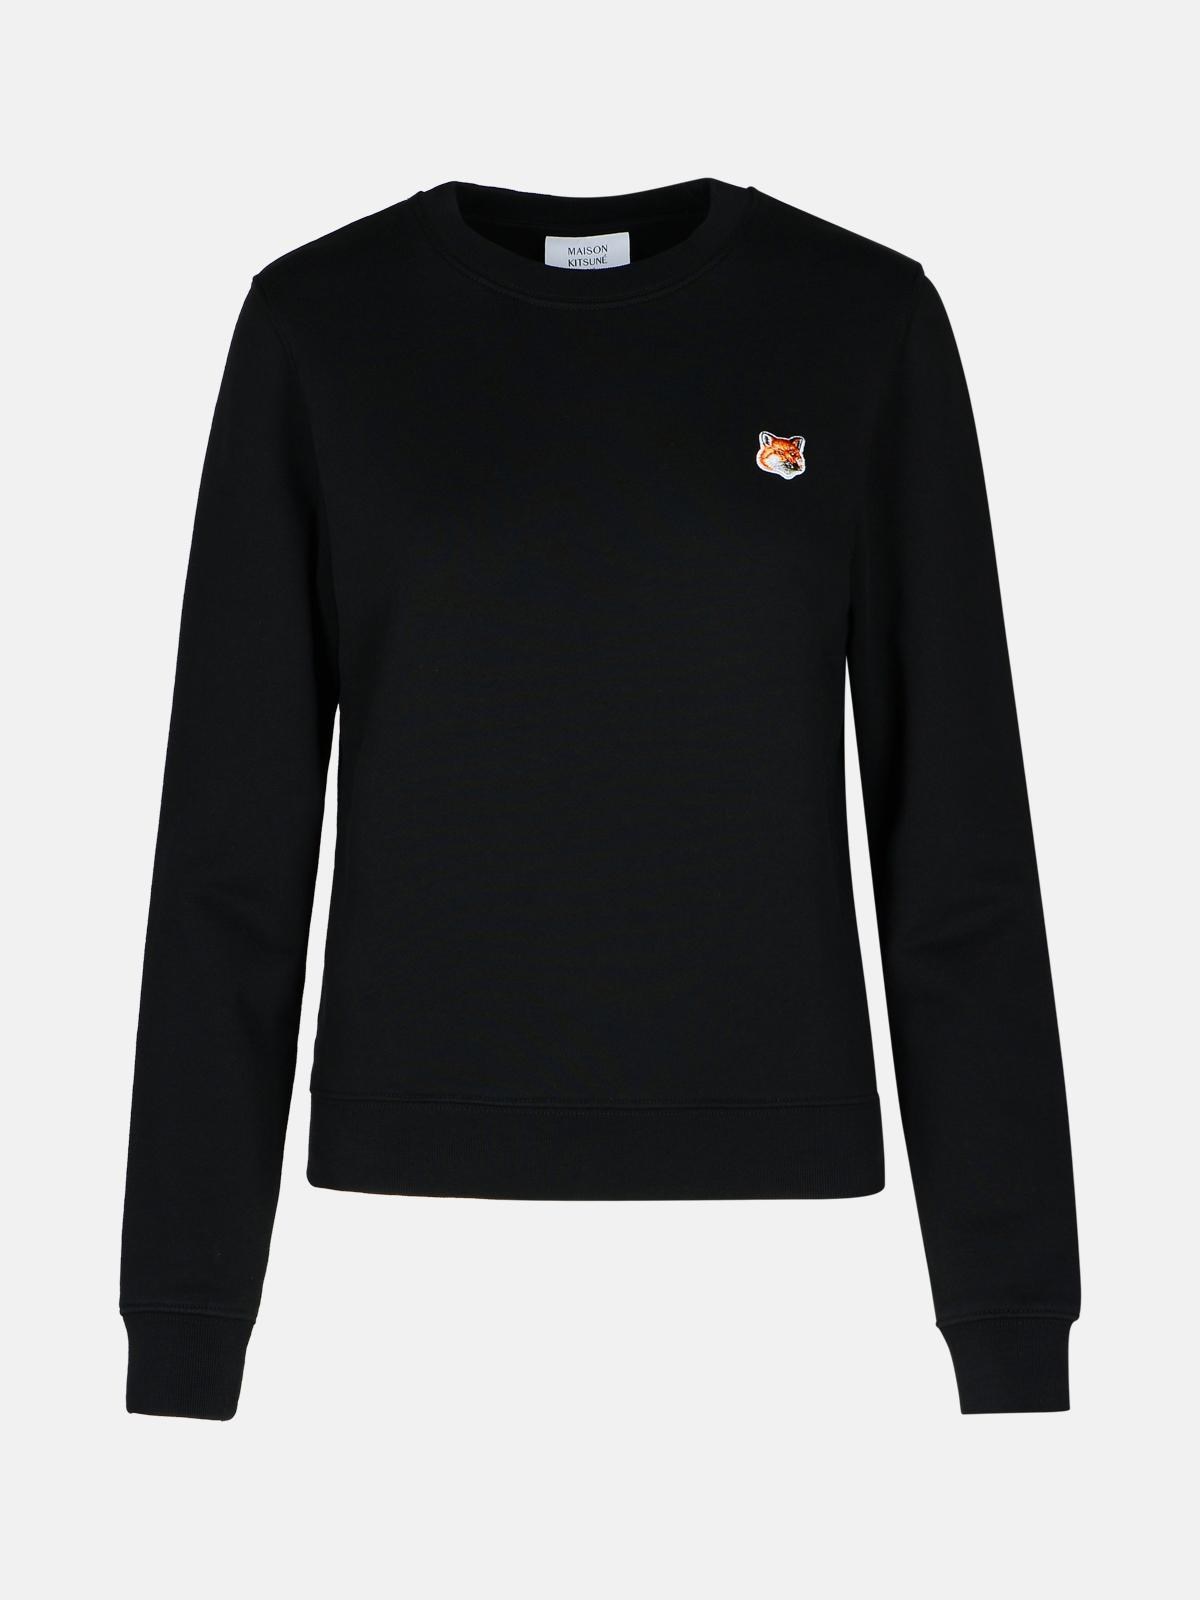 Maison Kitsuné 'fox Head' Black Cotton Sweatshirt